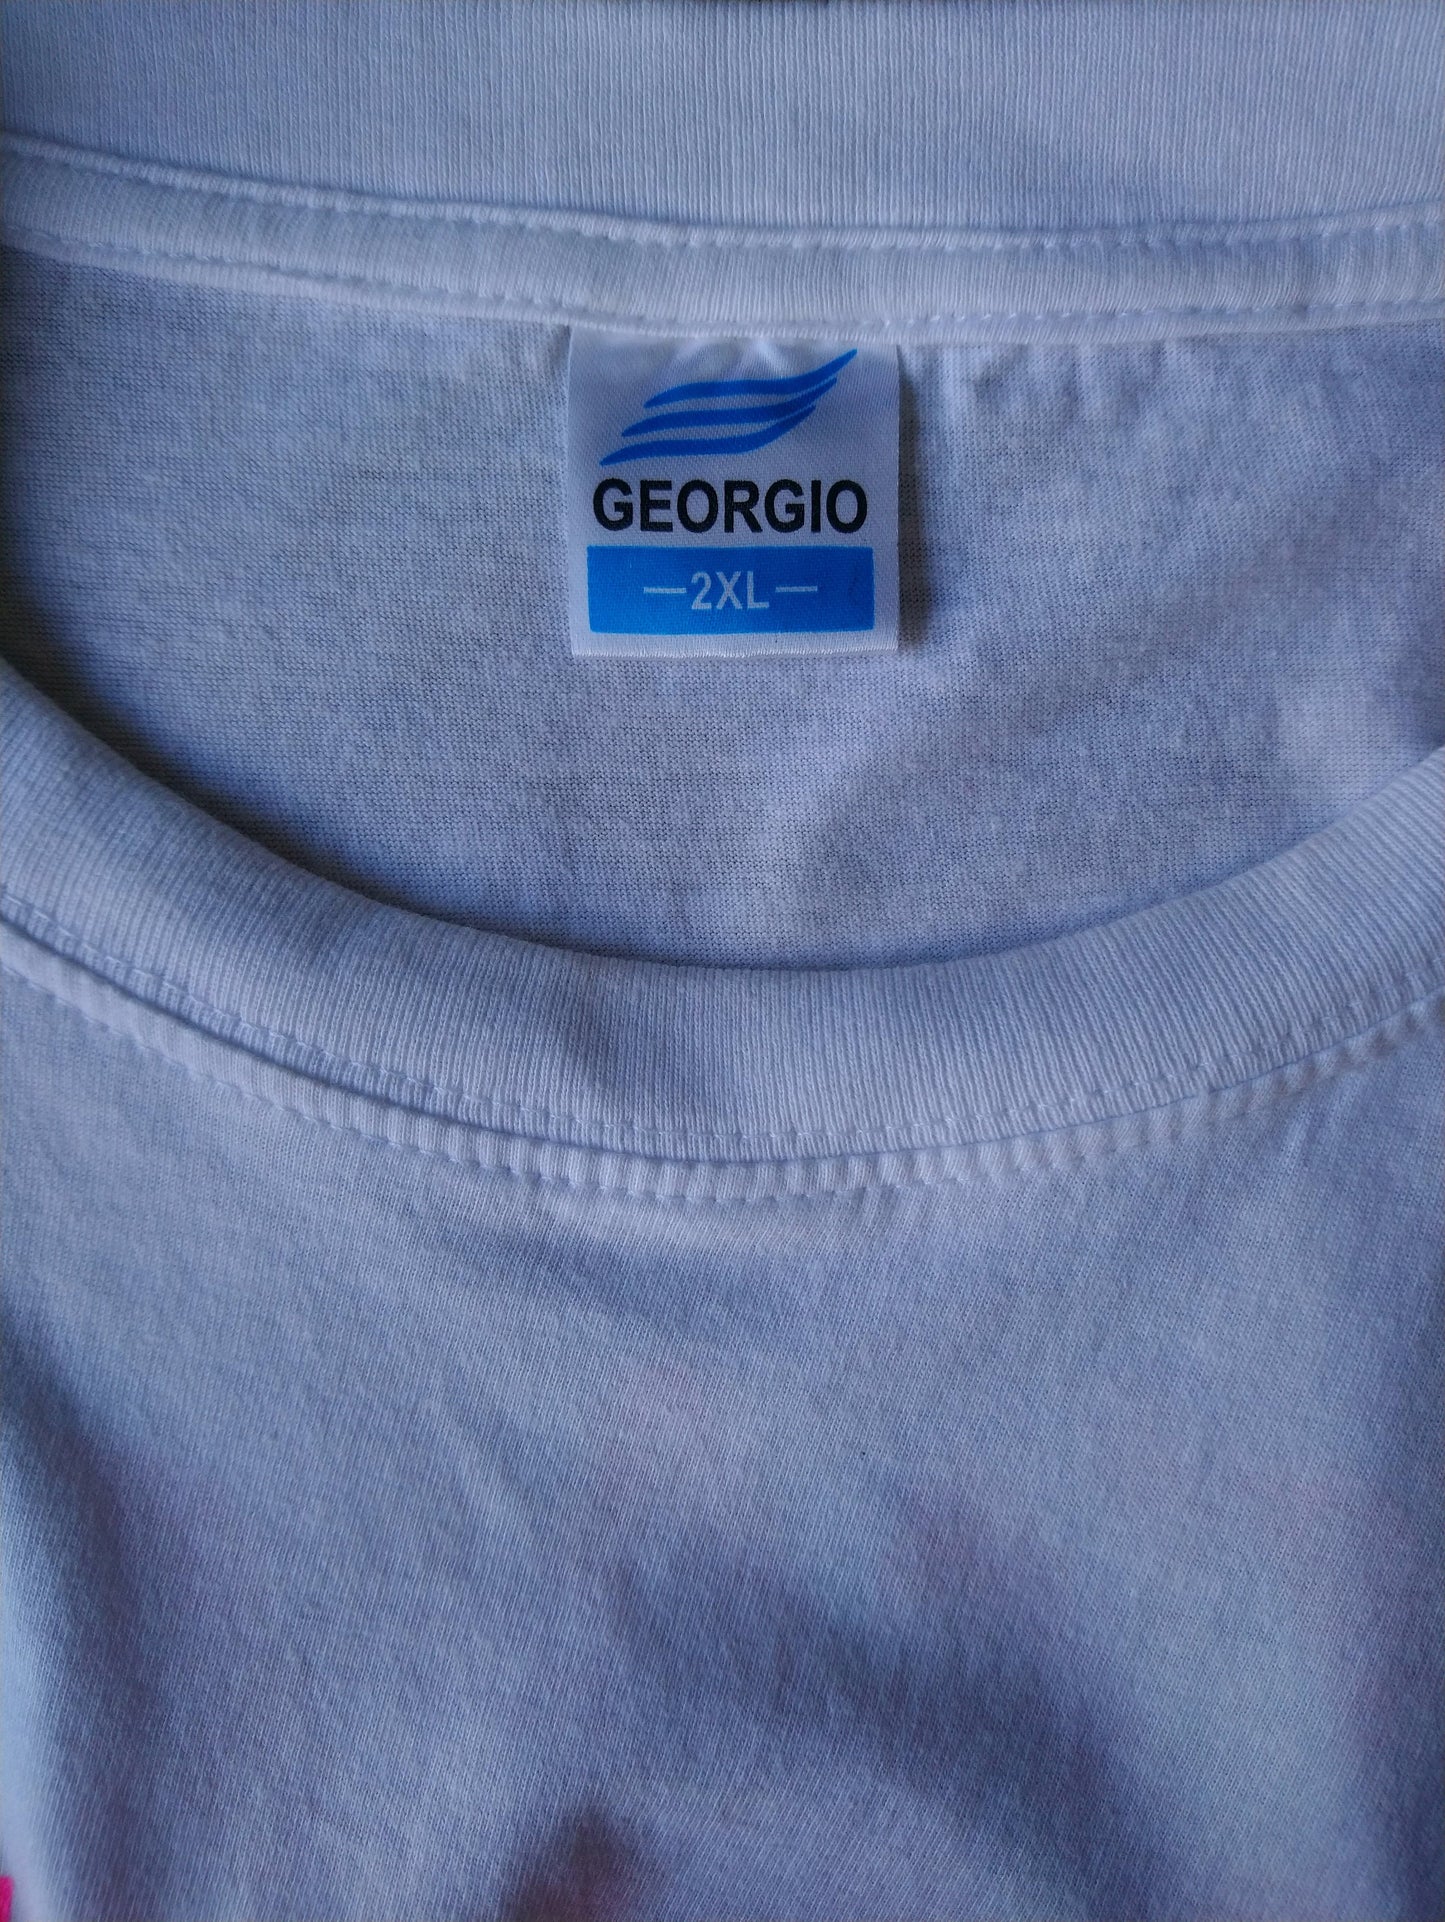 Georgio Shirt Napa. White with print. Size XXL.